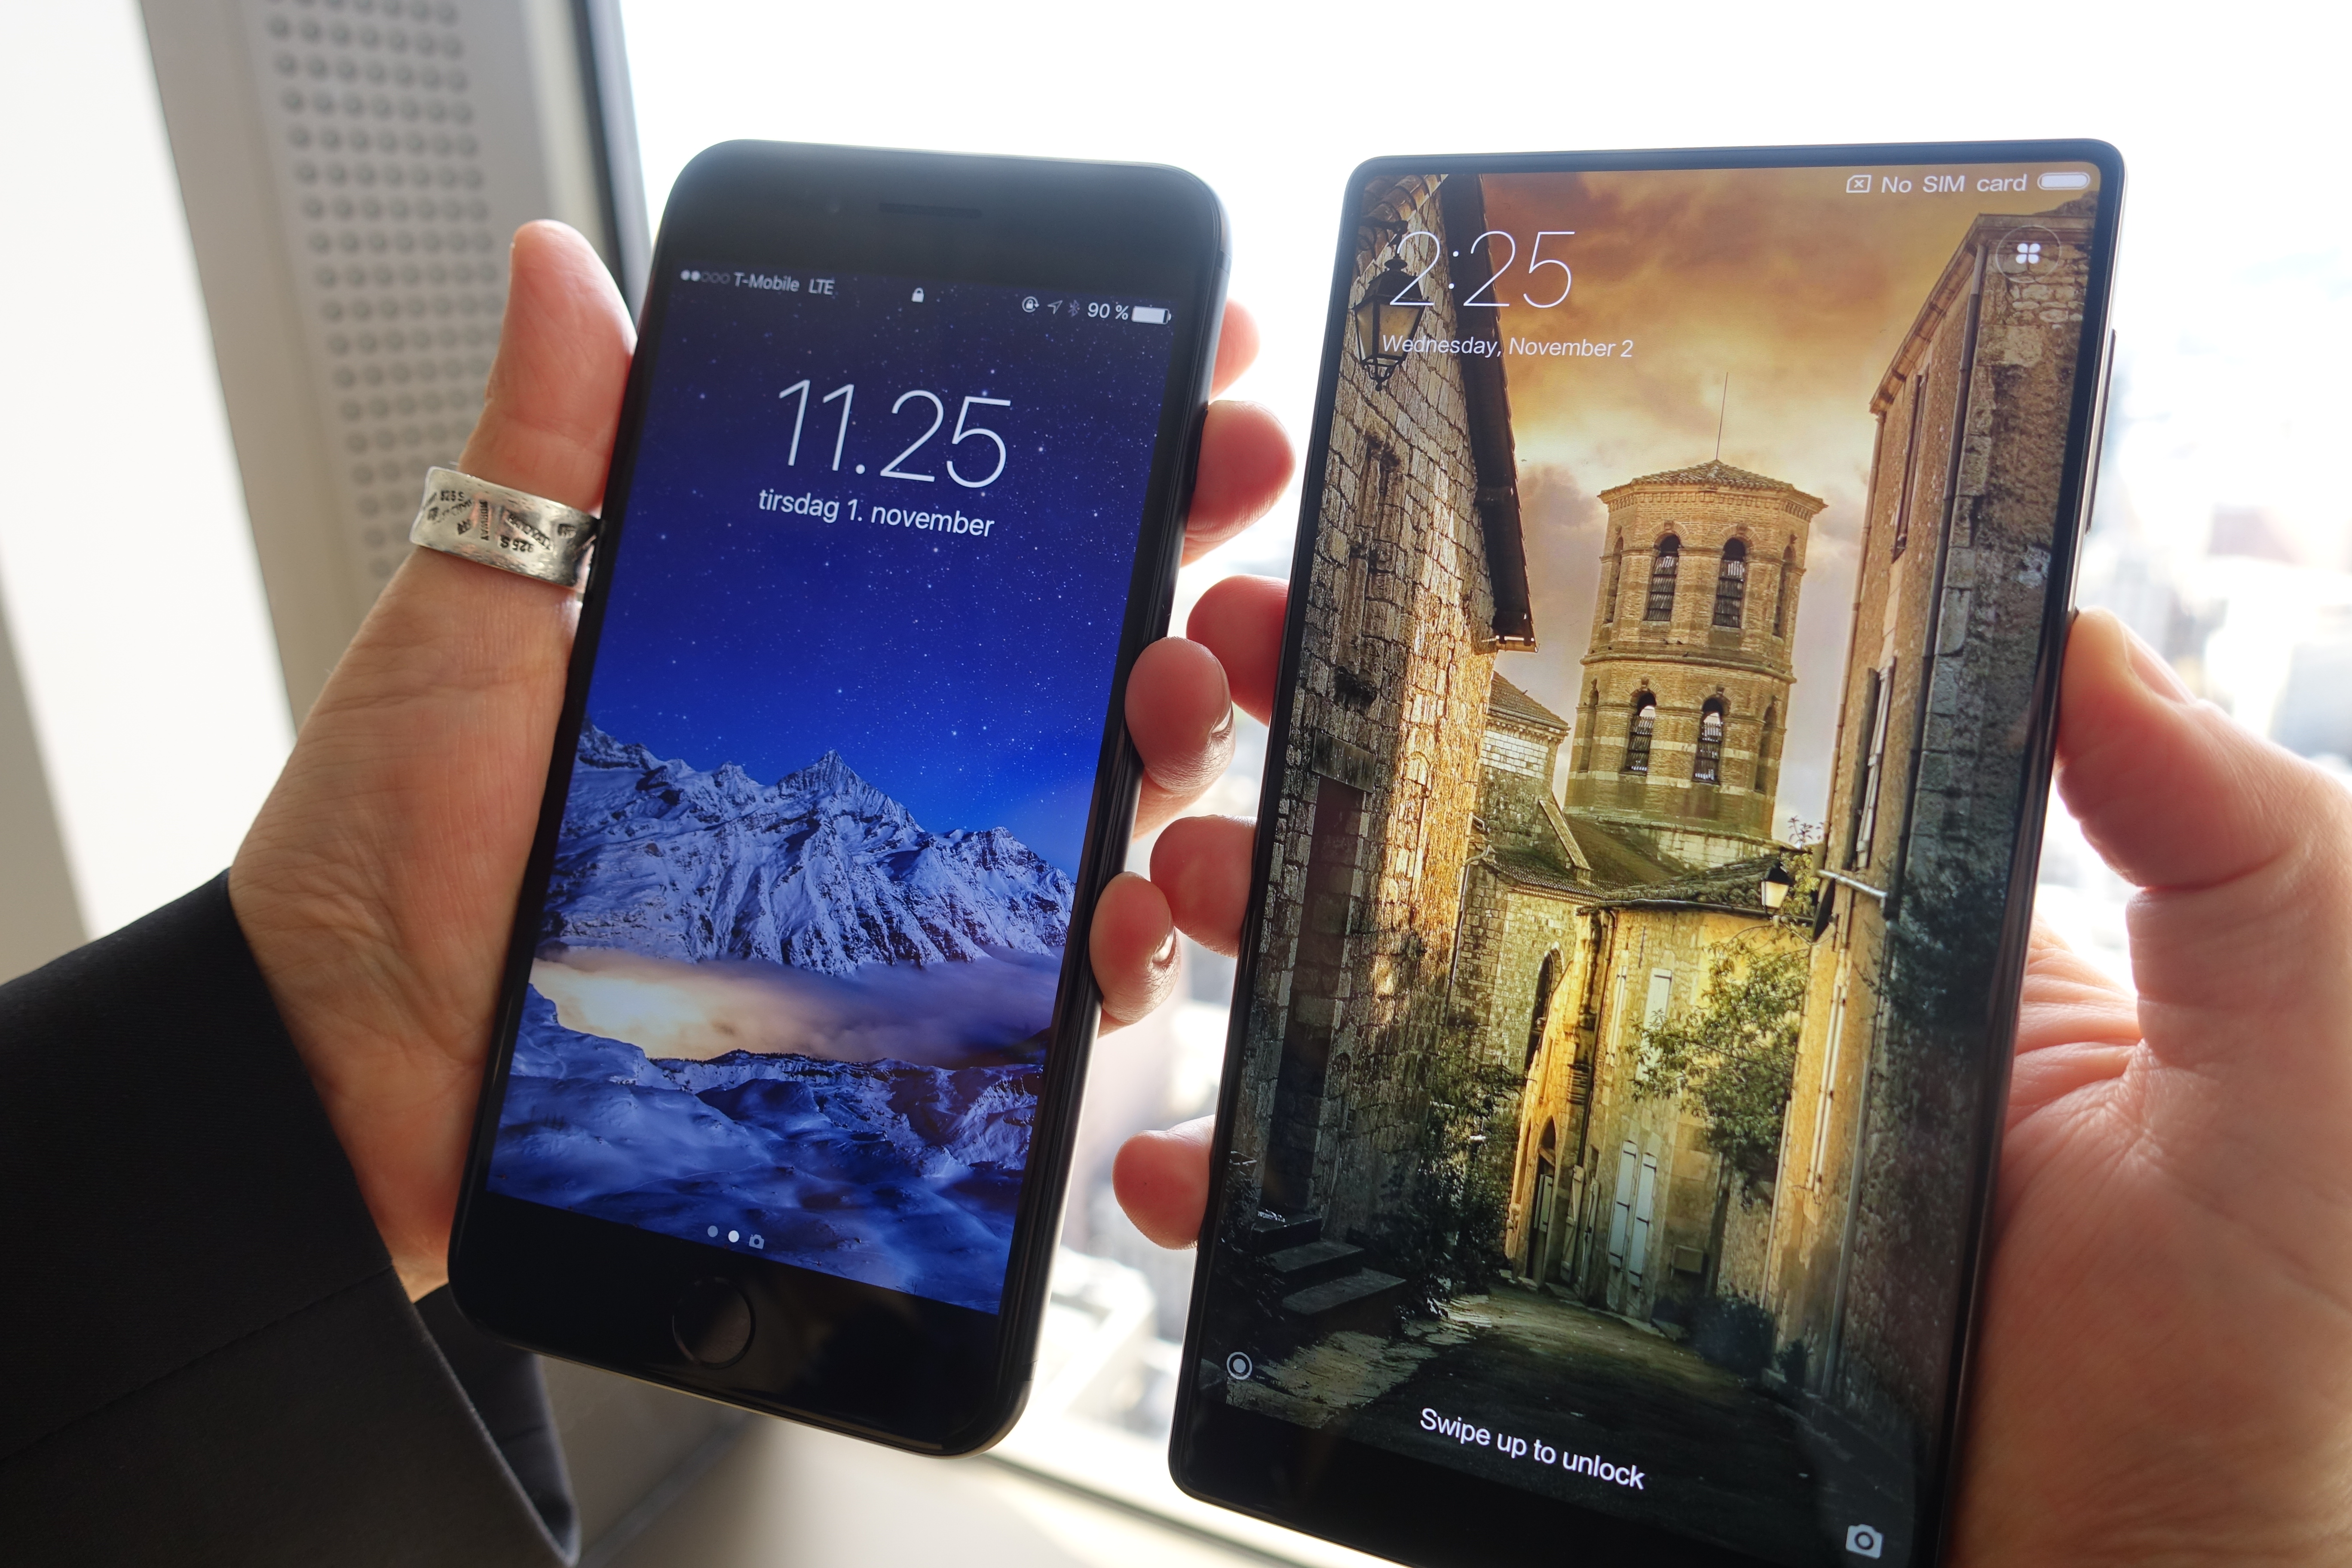 iPhone 7 Plus til venstre, Mi Mix til høyre. En av disse designene har en fremtid...